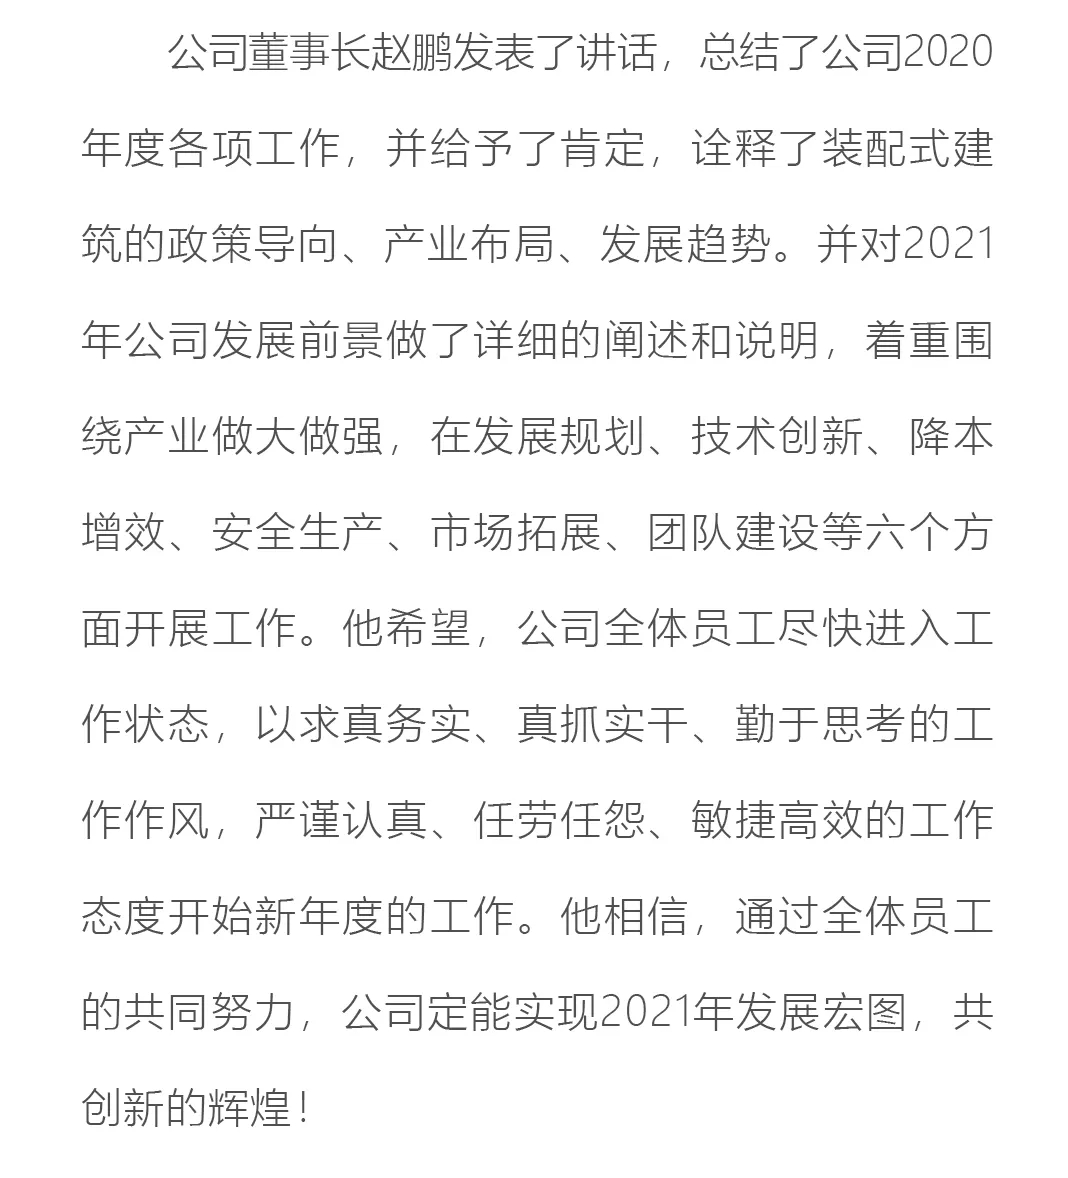 重庆渝隆远大公司召开2021年开工动员、安全部署暨2020年度表彰大会